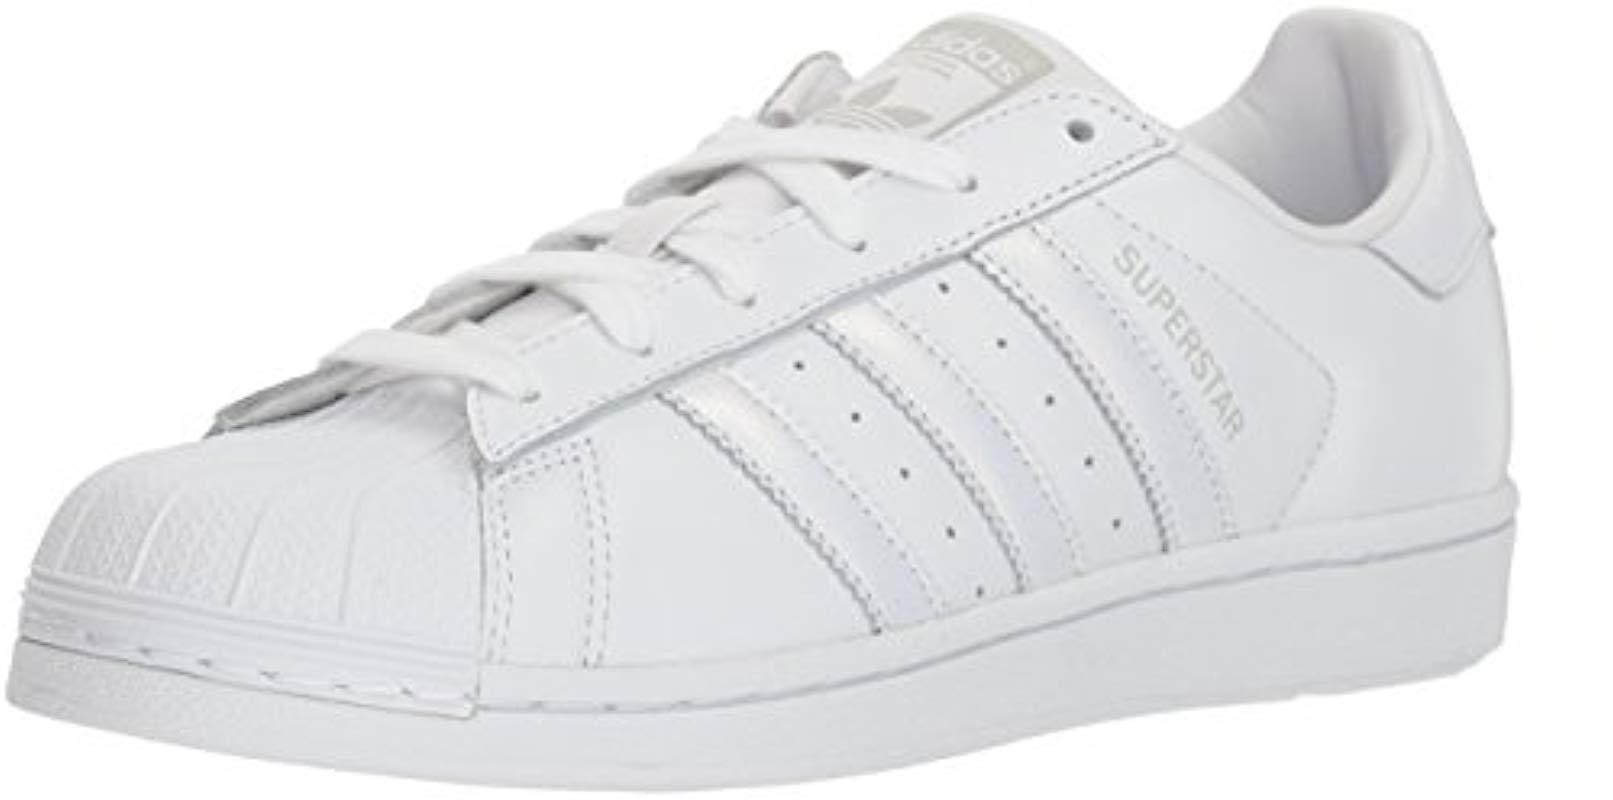 adidas Originals Superstar Shoes Running White/grey, 8.5 M Us in White ...